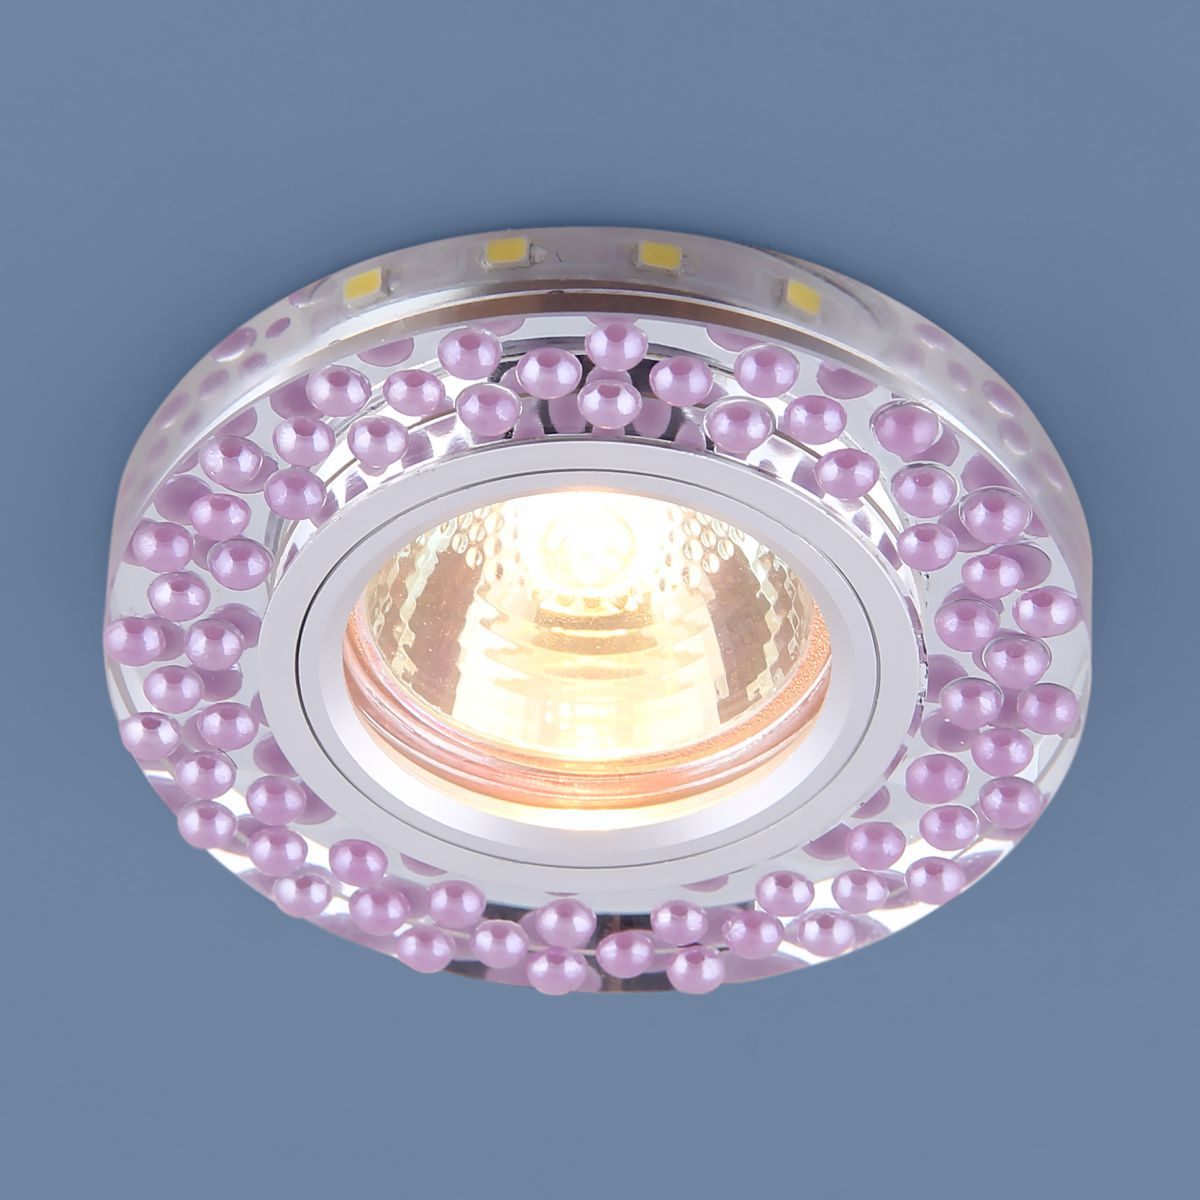 Точечный светильник с LED подсветкой 2194 MR16 SL/VL зеркальный/фиолетовый. Фото 2